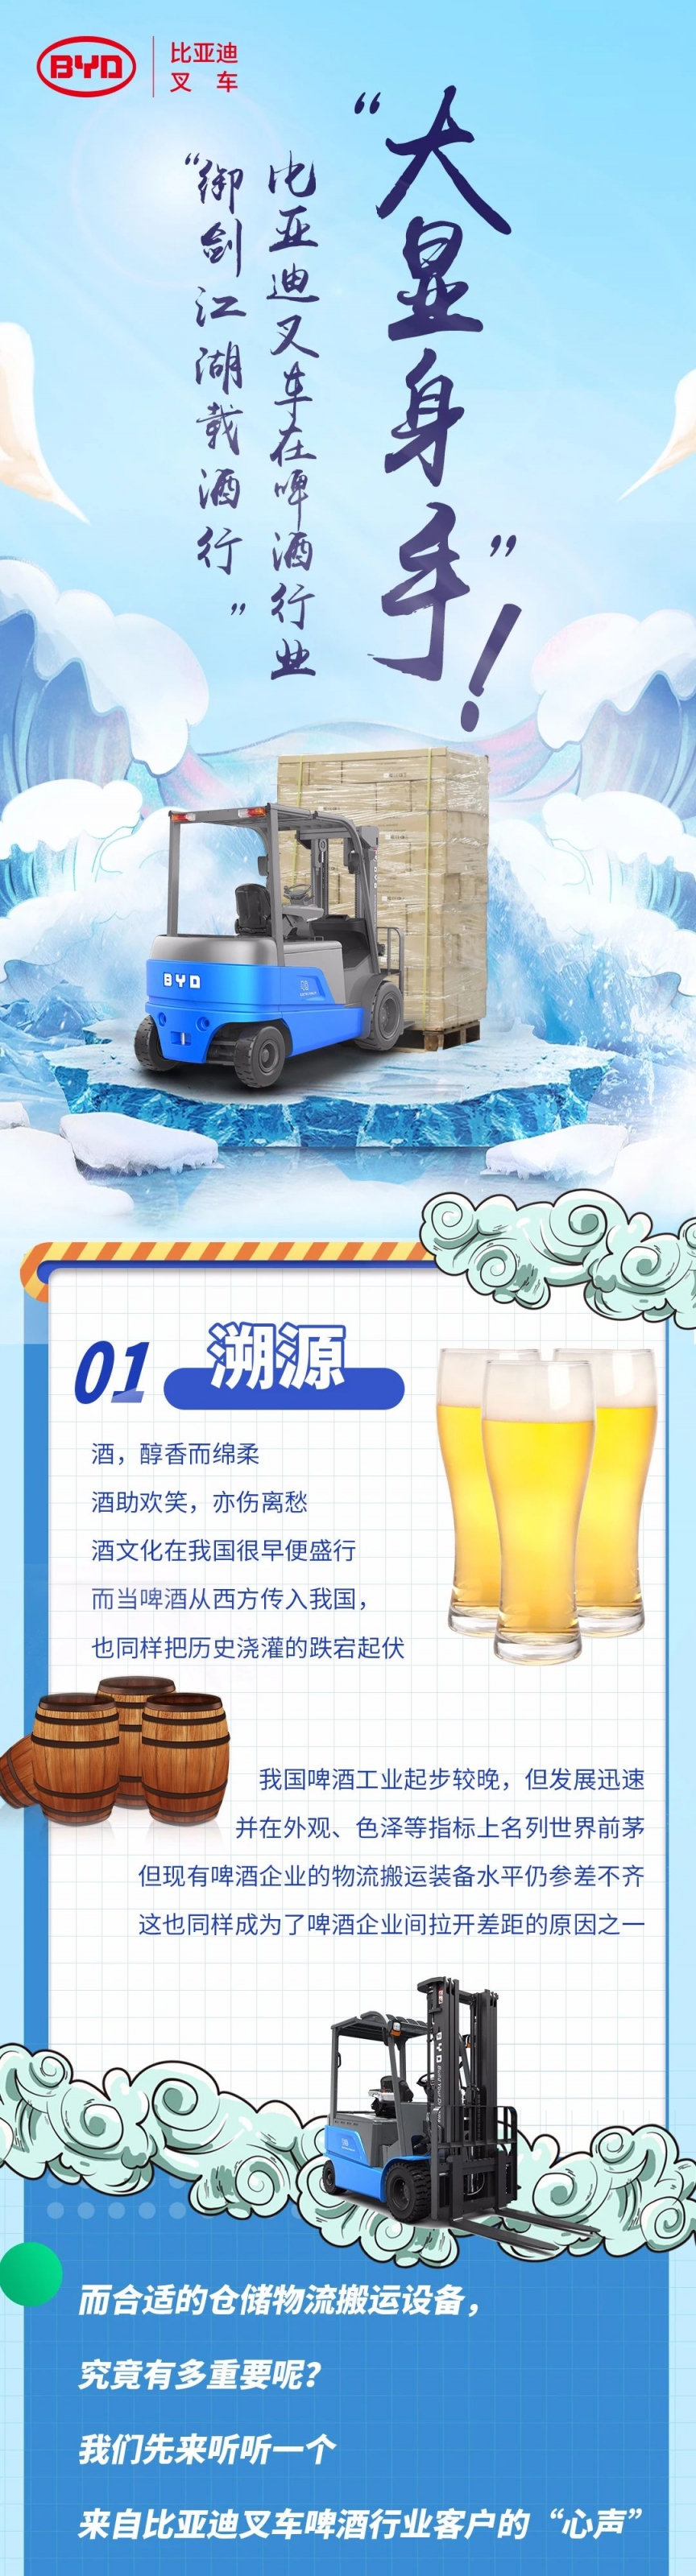 “禦劍江湖載酒行”！比亞迪叉車在啤酒行業“大顯身手”